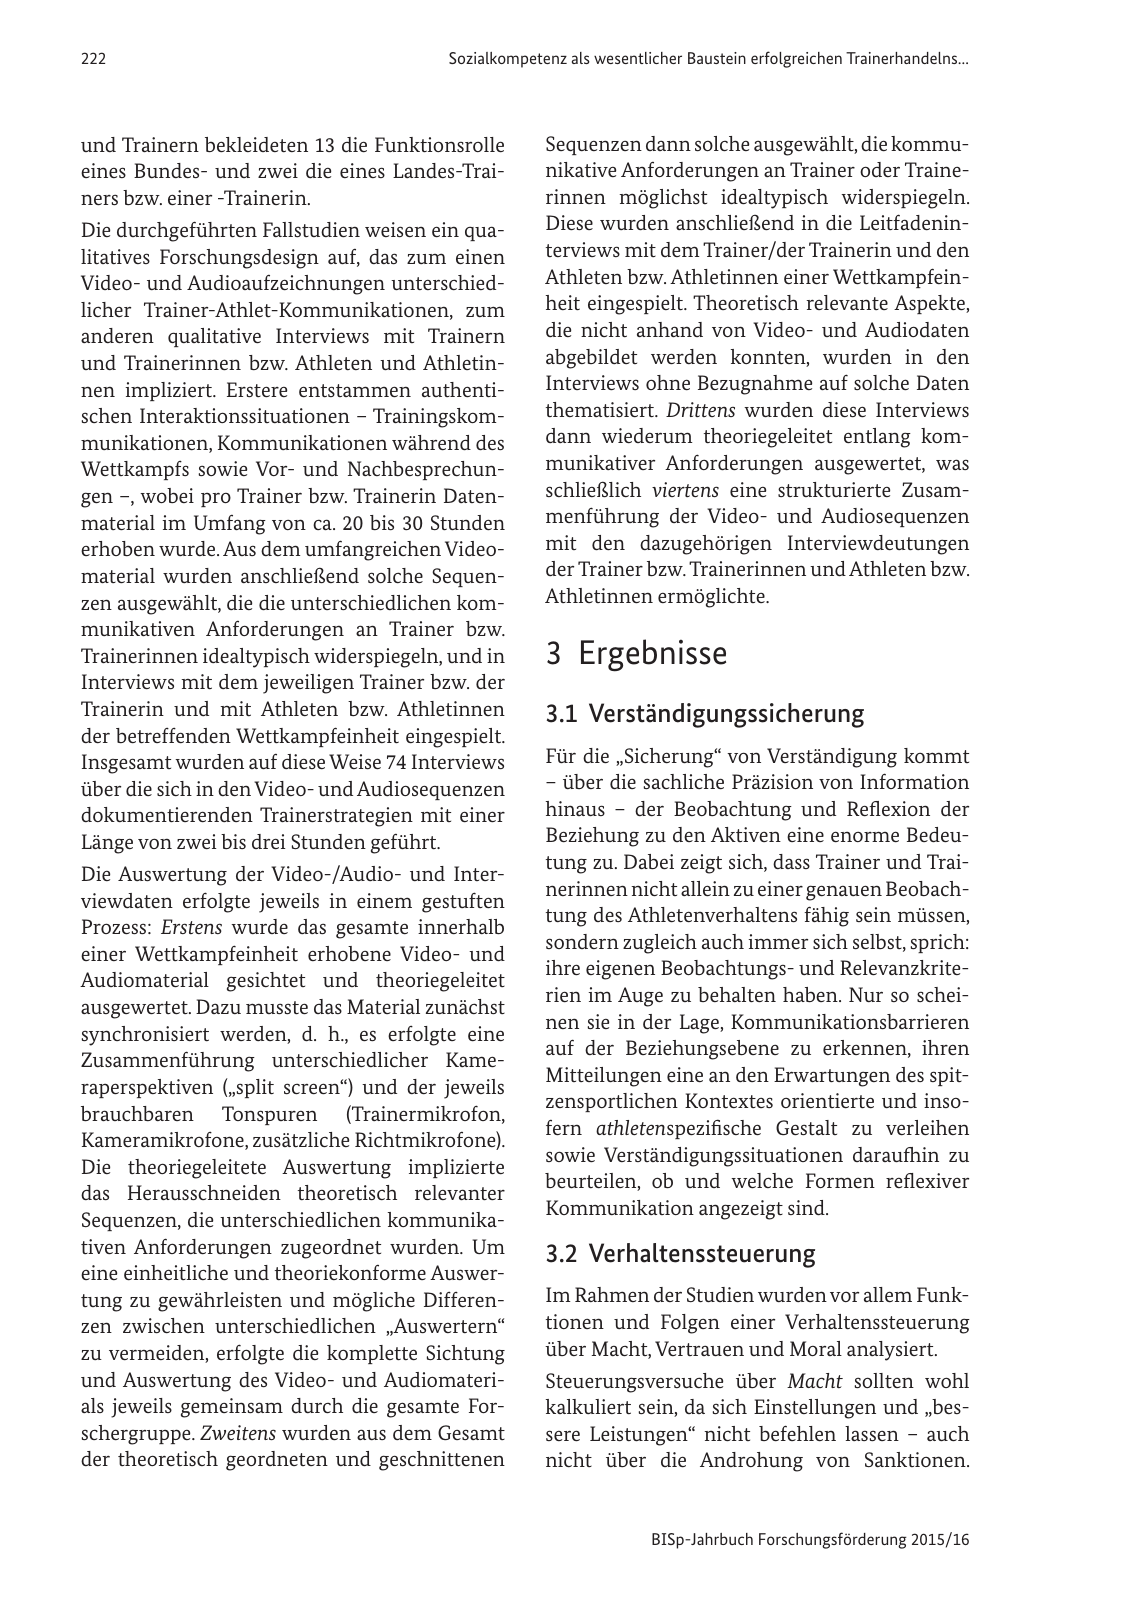 Vorschau BISp-Jahrbuch Forschungsförderung 2015/16 Seite 224